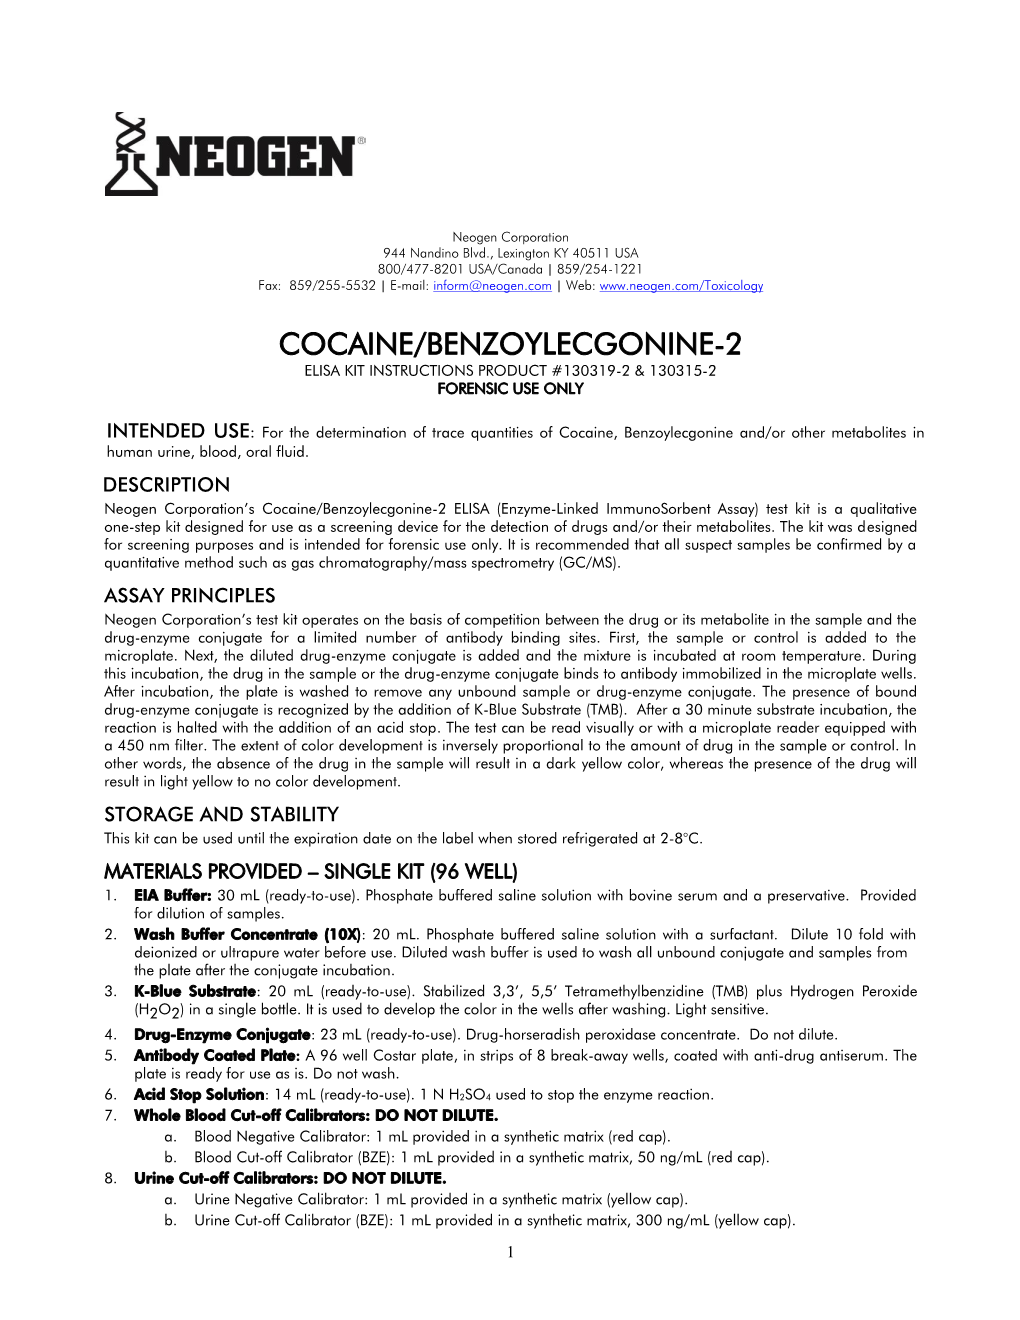 Cocaine/Benzoylecgonine-2 Elisa Kit Instructions Product #130319-2 & 130315-2 Forensic Use Only